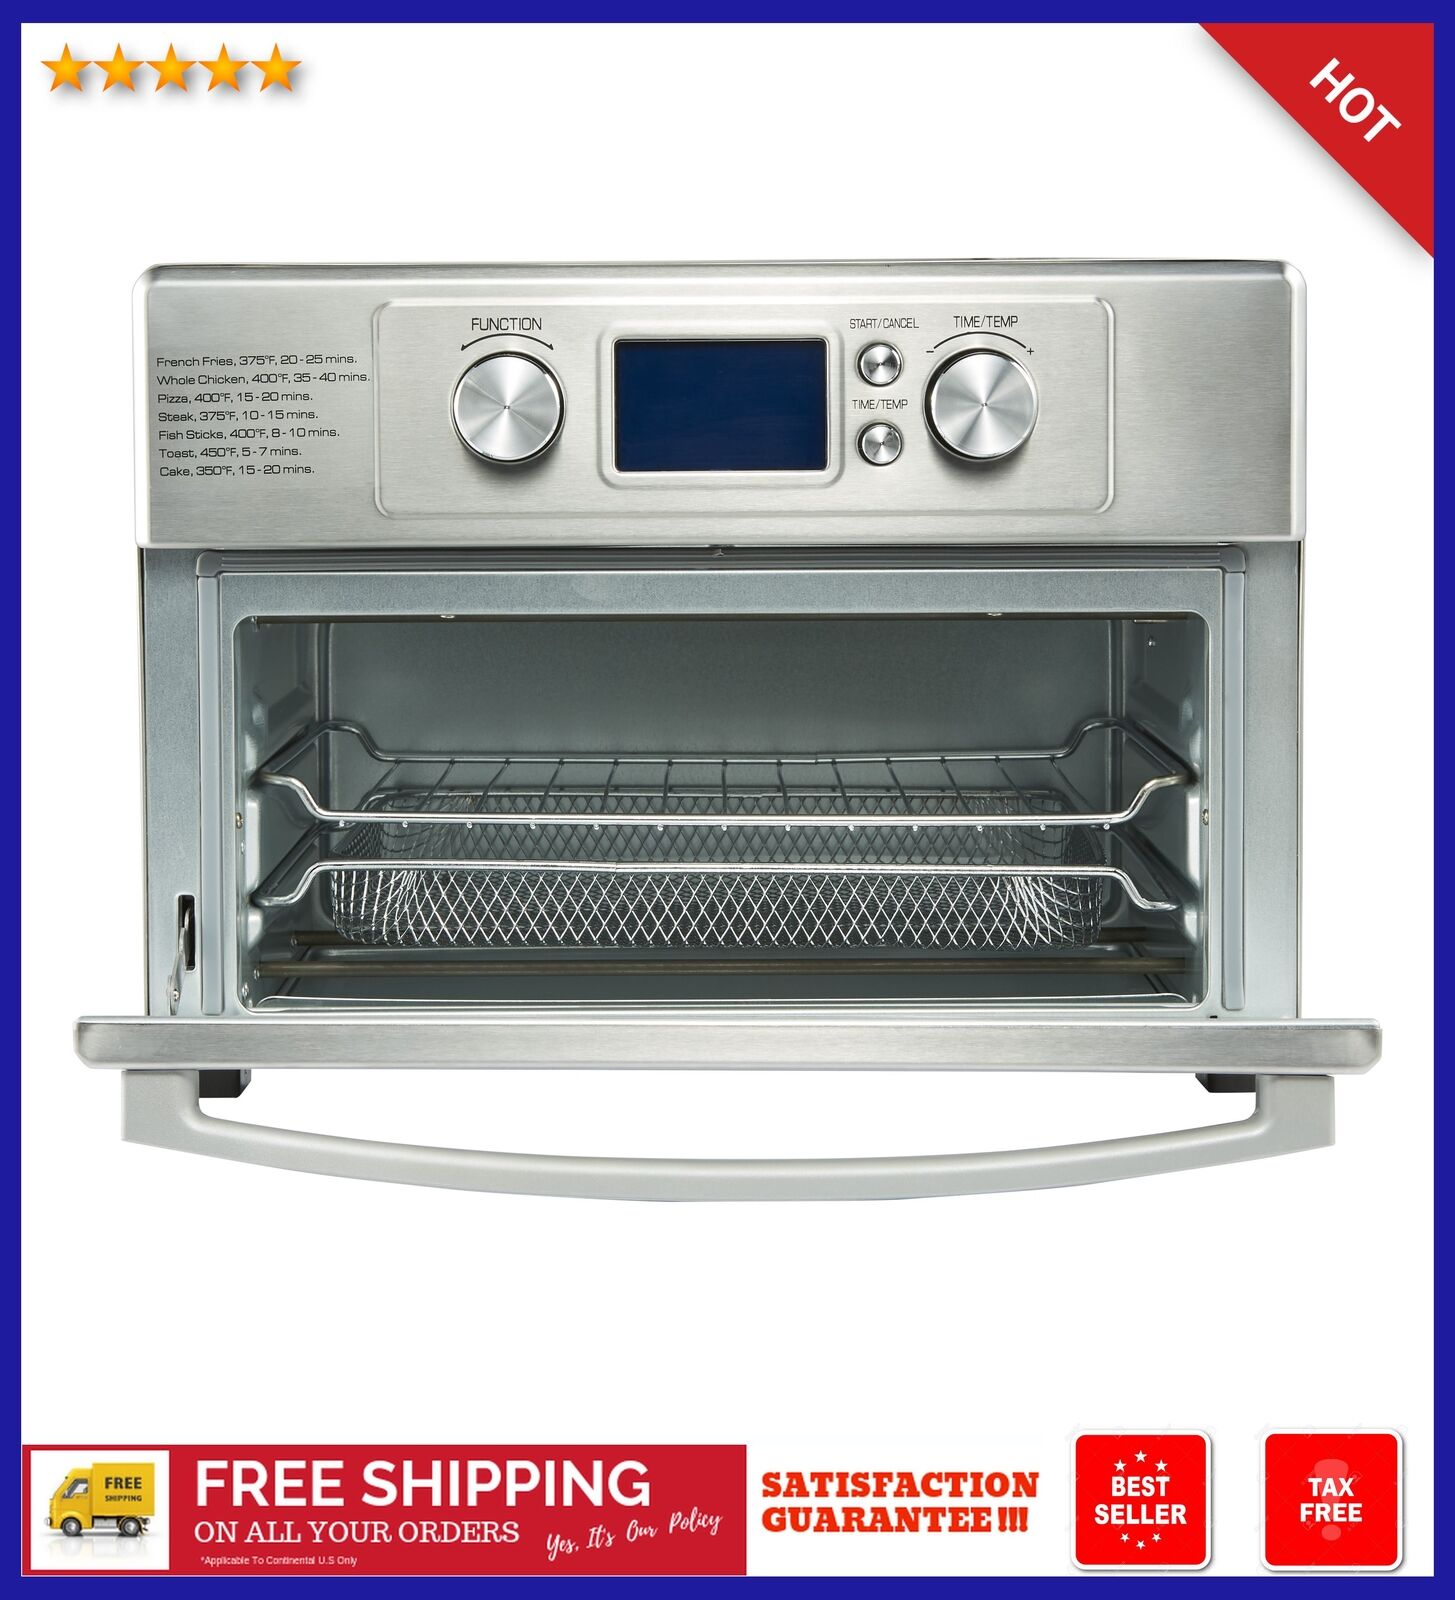 Farberware Air Fryer Toaster Oven User Manual